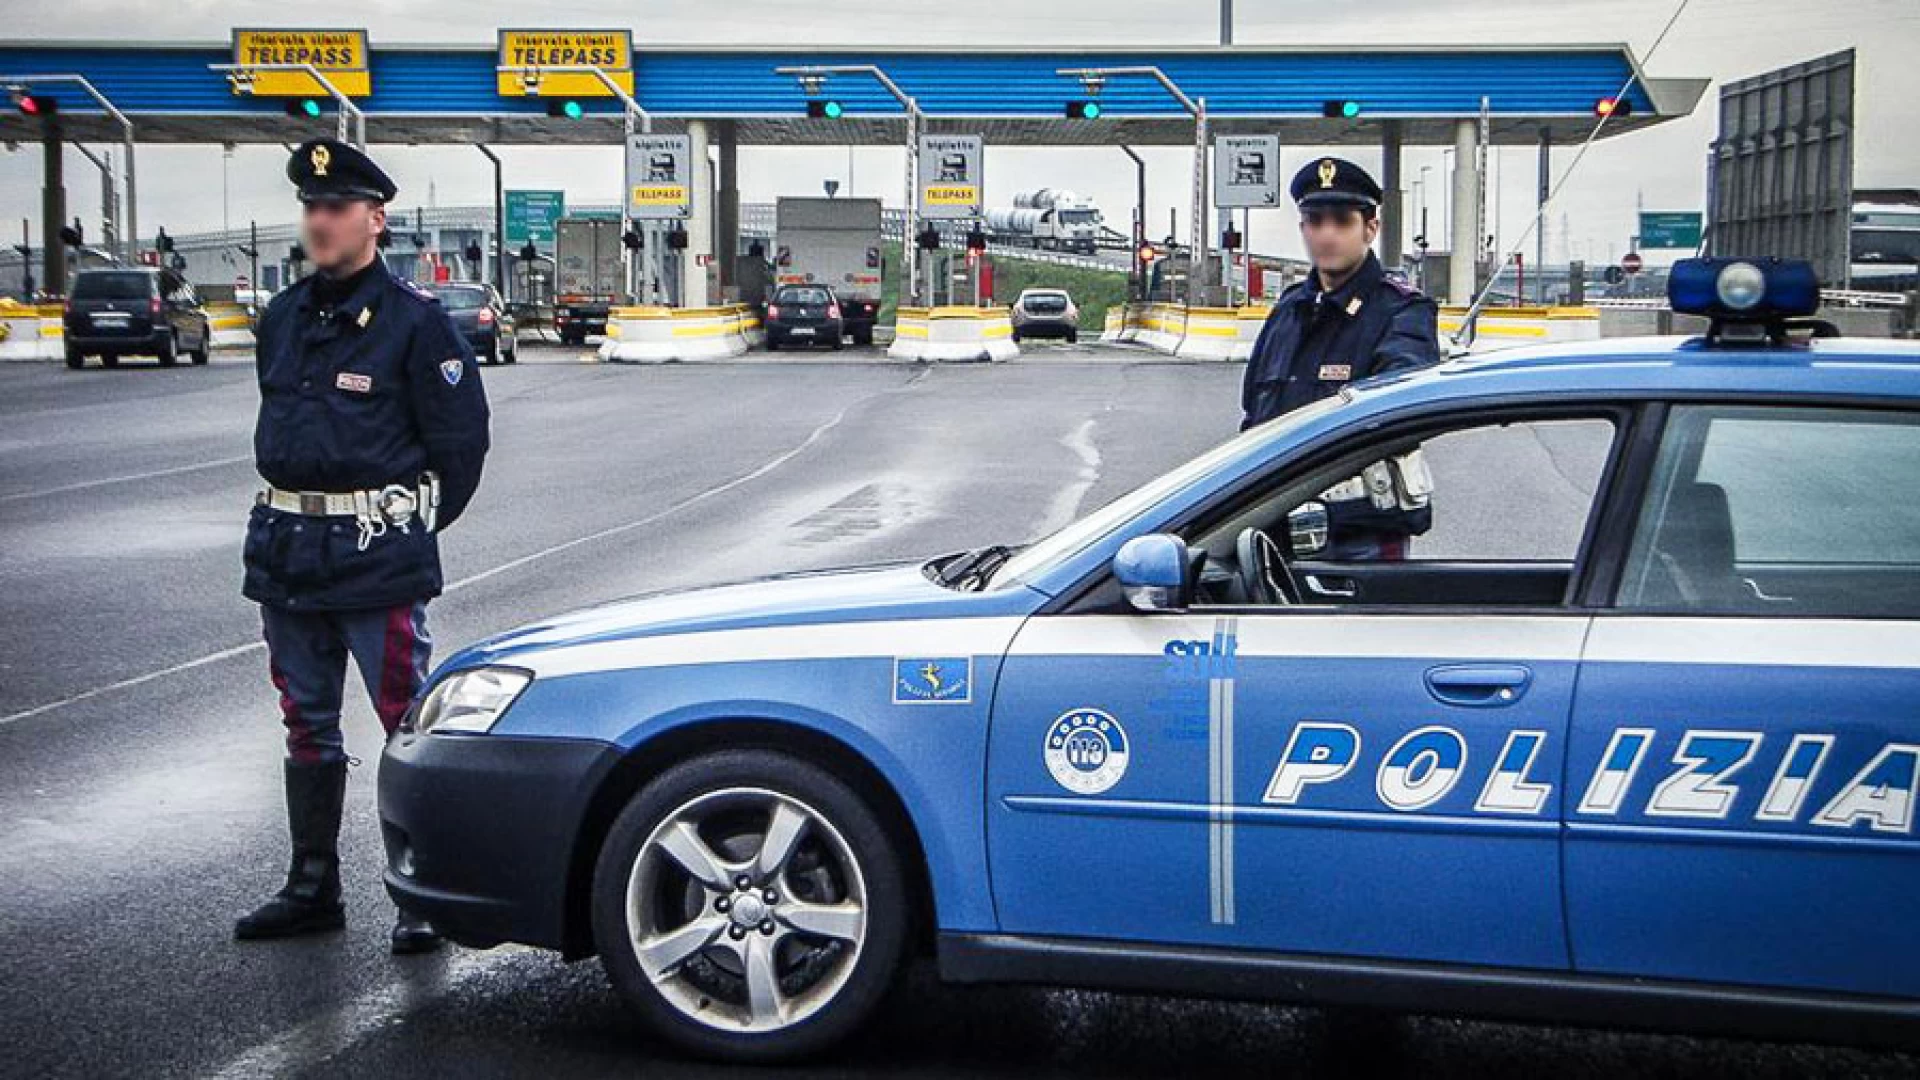 Isernia: Campagna Tispol, la Polizia contro l’uso dei cellulari alla guida. Infrazione al centro dei controlli stradali.